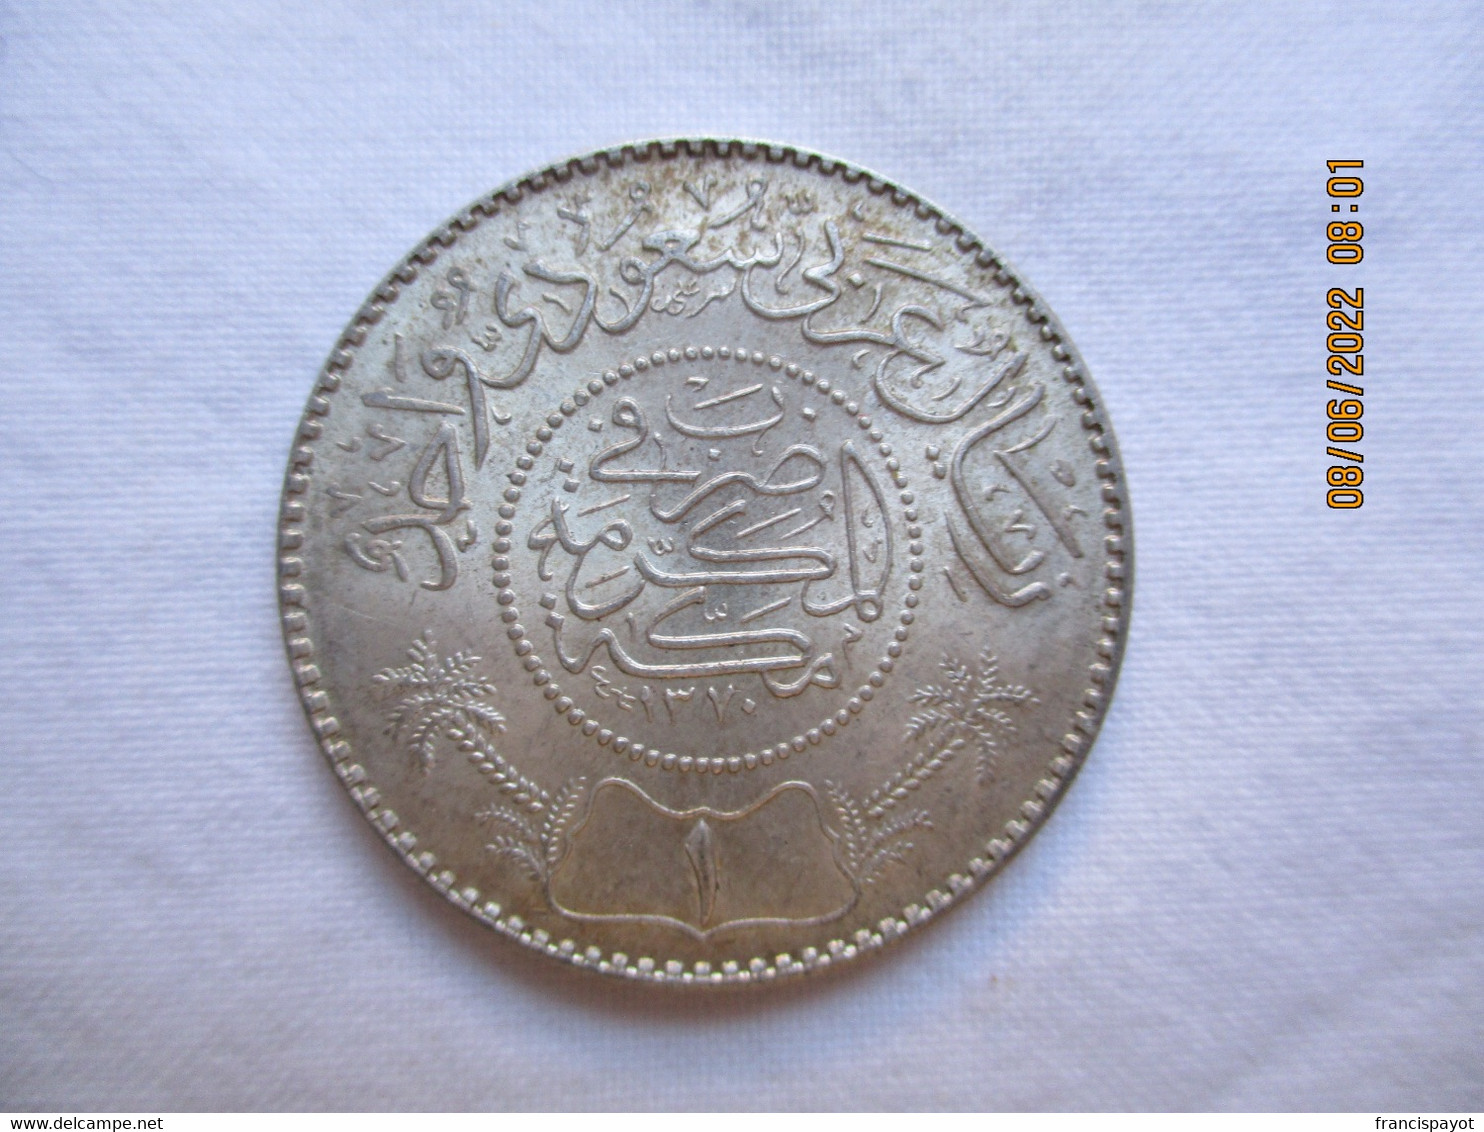 Arabie Saoudite: 1 Riyal 1370 / 1949/50 (silver) - Saudi Arabia